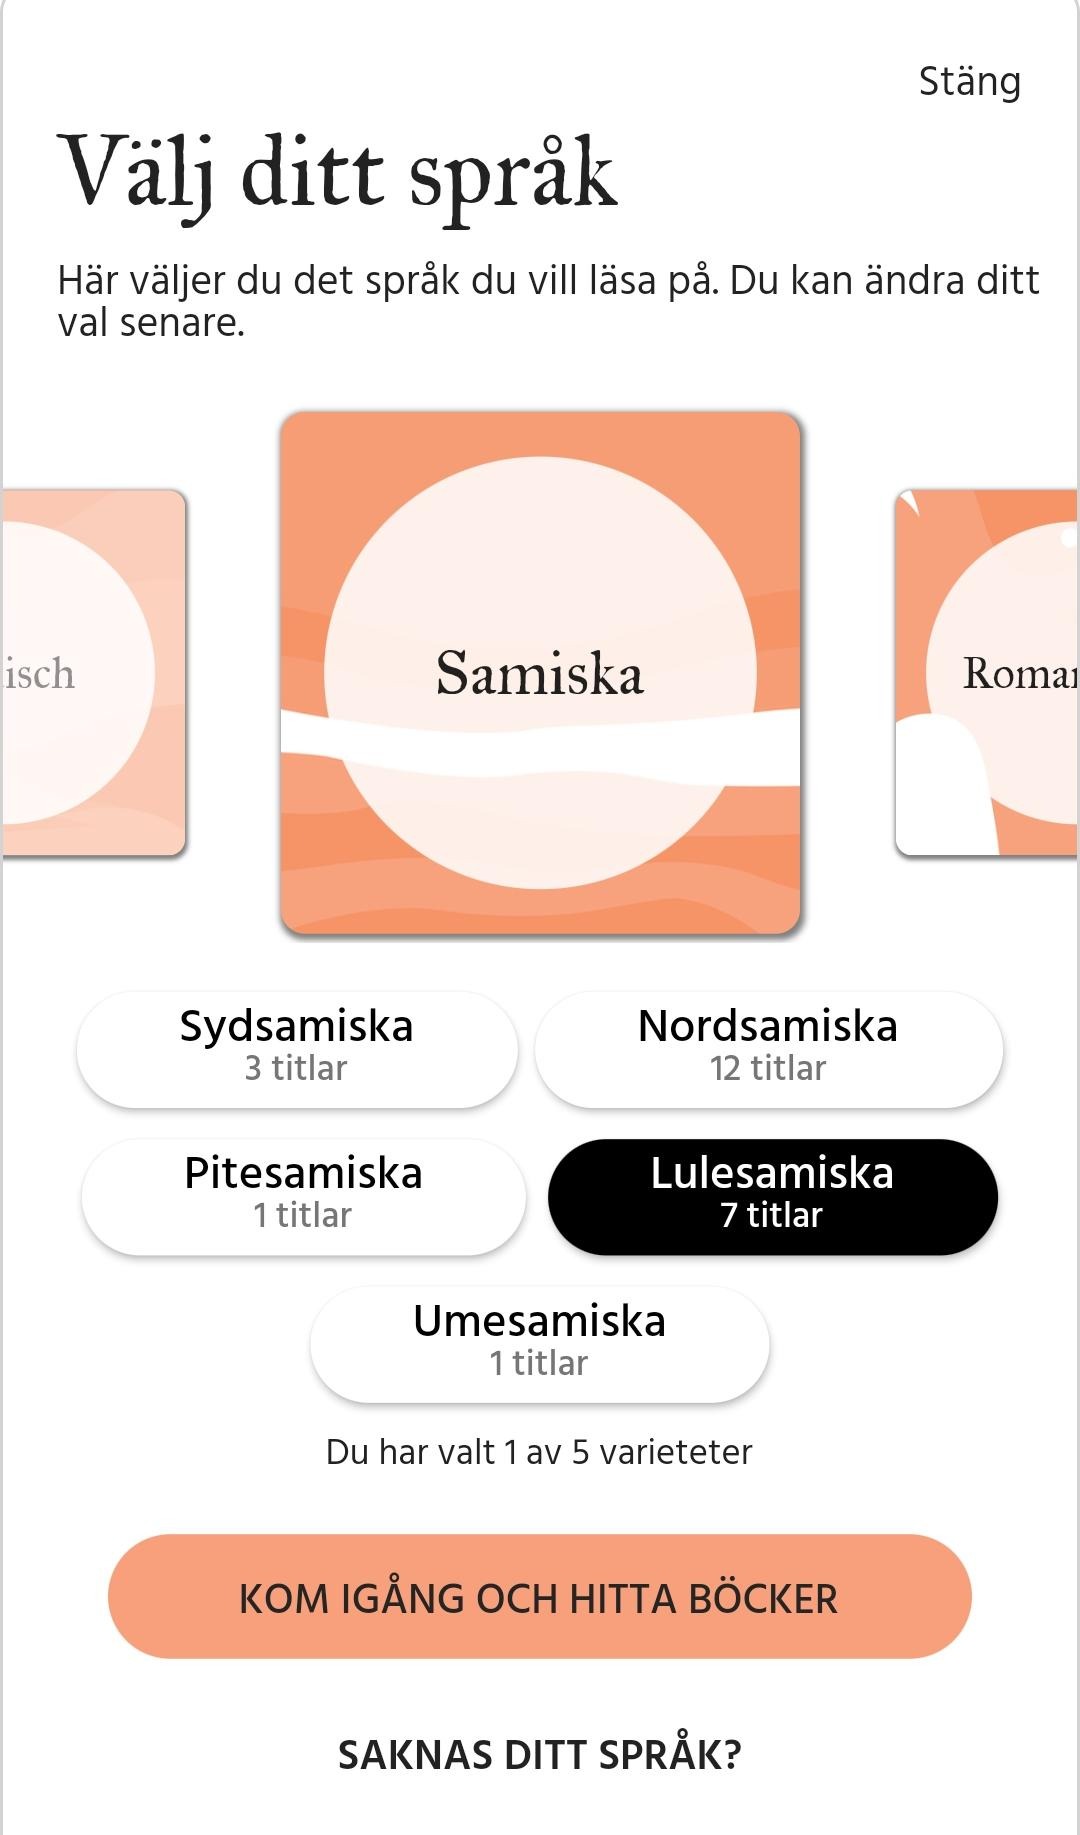 Mobilvy i appen Bläddra där det står namn på olika varieteter av samiska samt en knapp med texten står "Kom igång och hitta böcker".